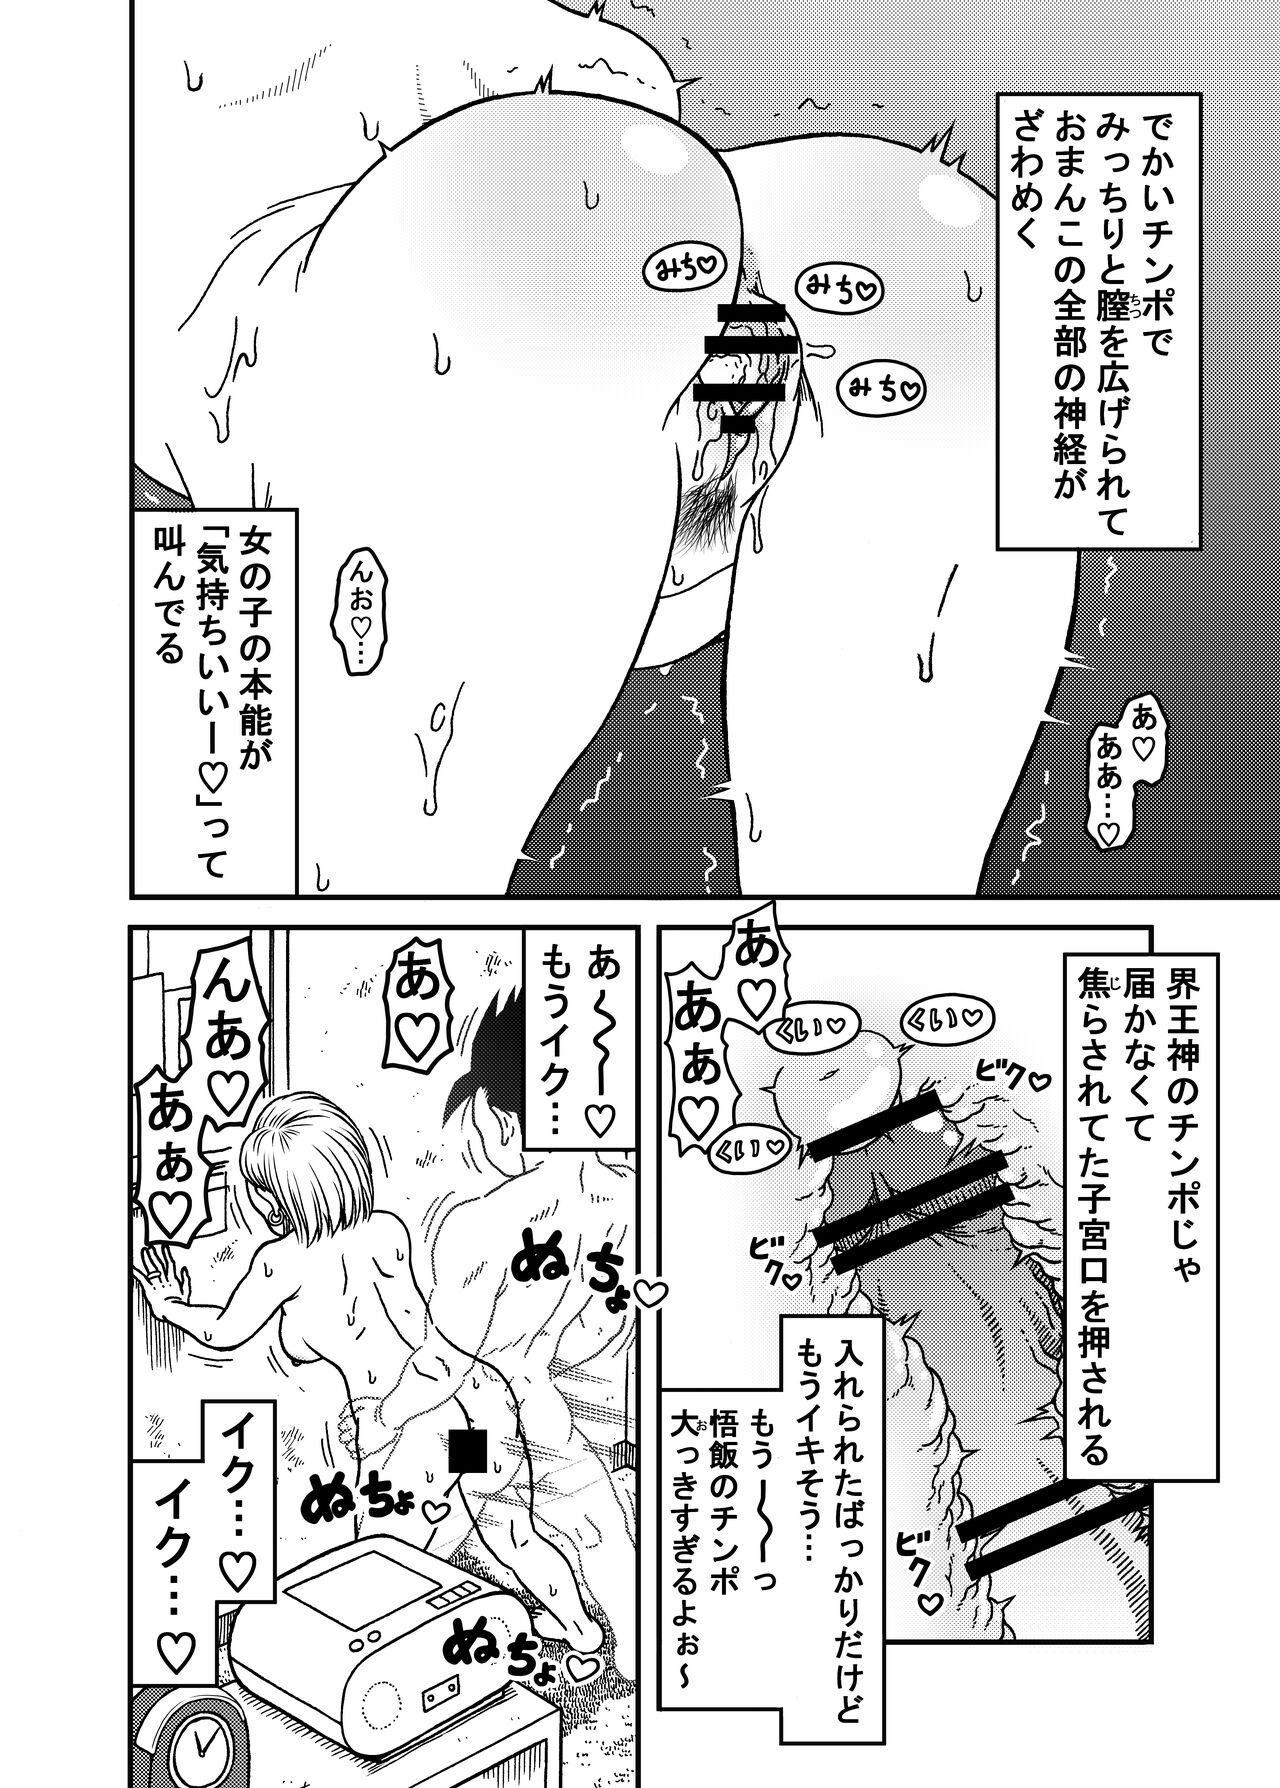 18 Gou NTR Nakadashi On Parade 5 Page 22 IMHentai